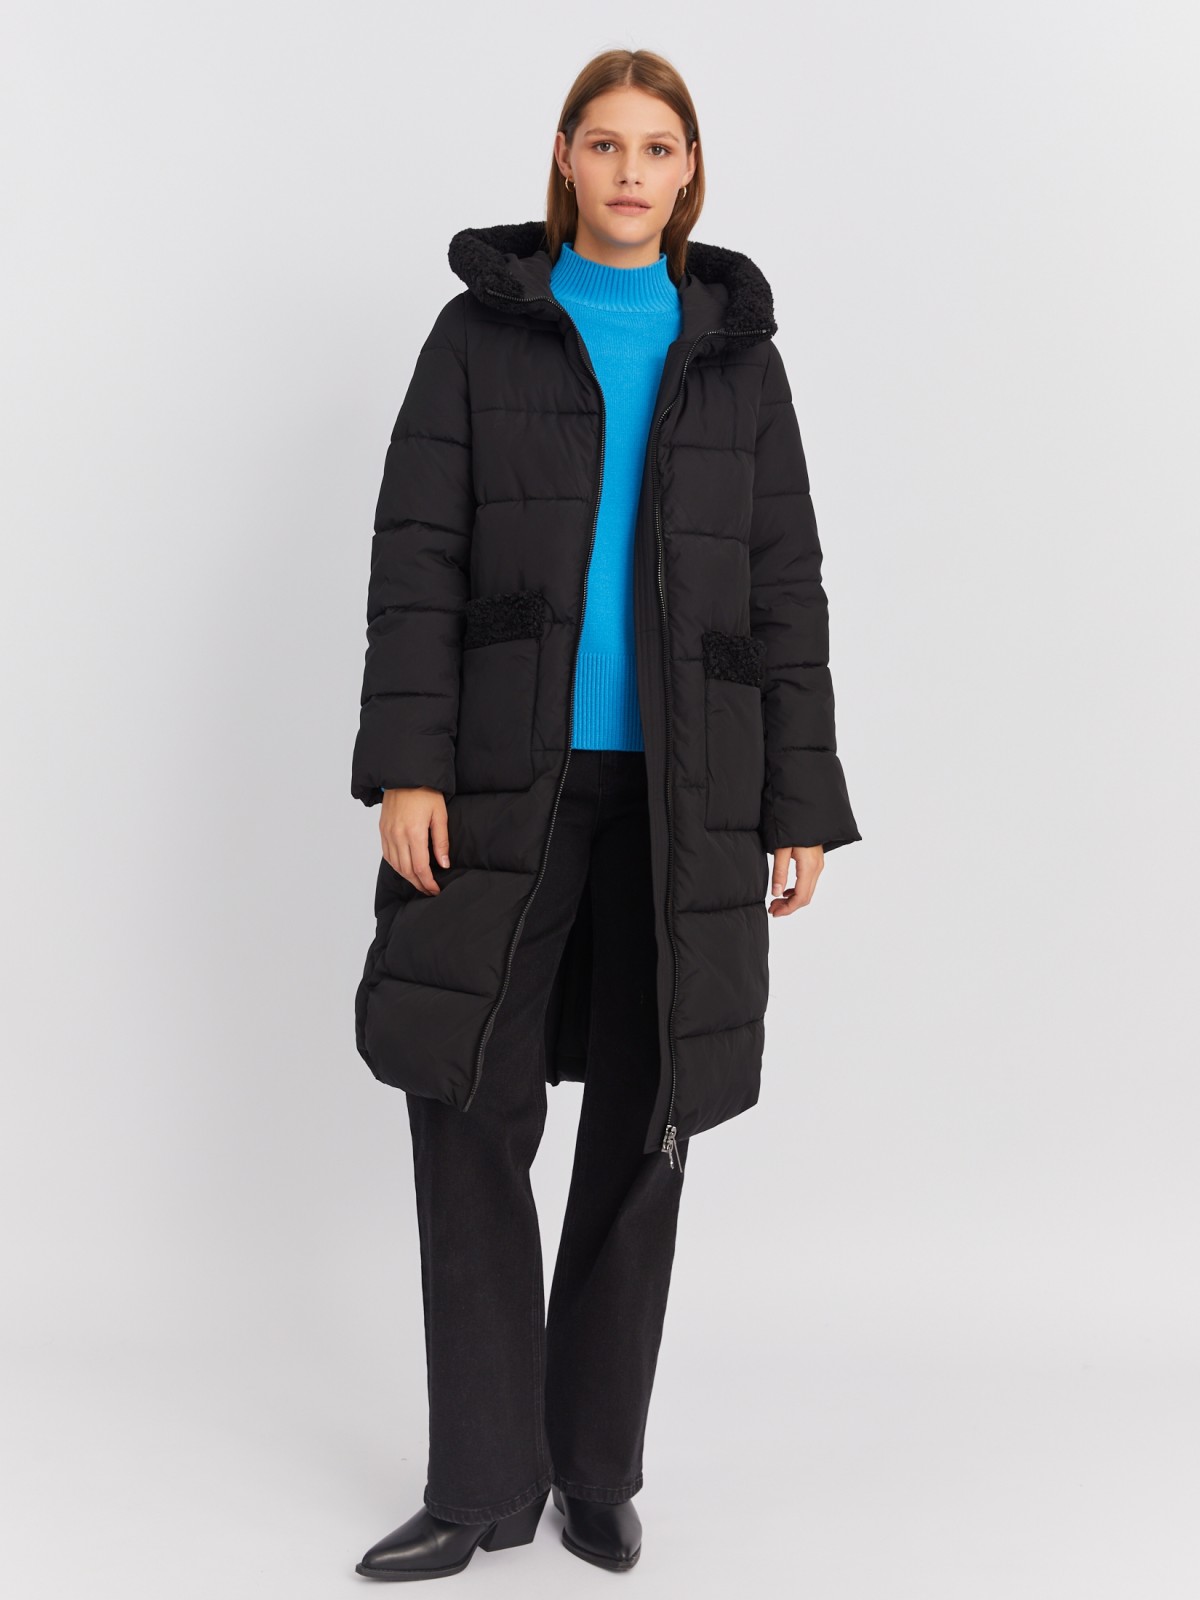 Тёплая куртка-пальто с капюшоном и отделкой из экомеха zolla 022425276044, цвет черный, размер M - фото 2